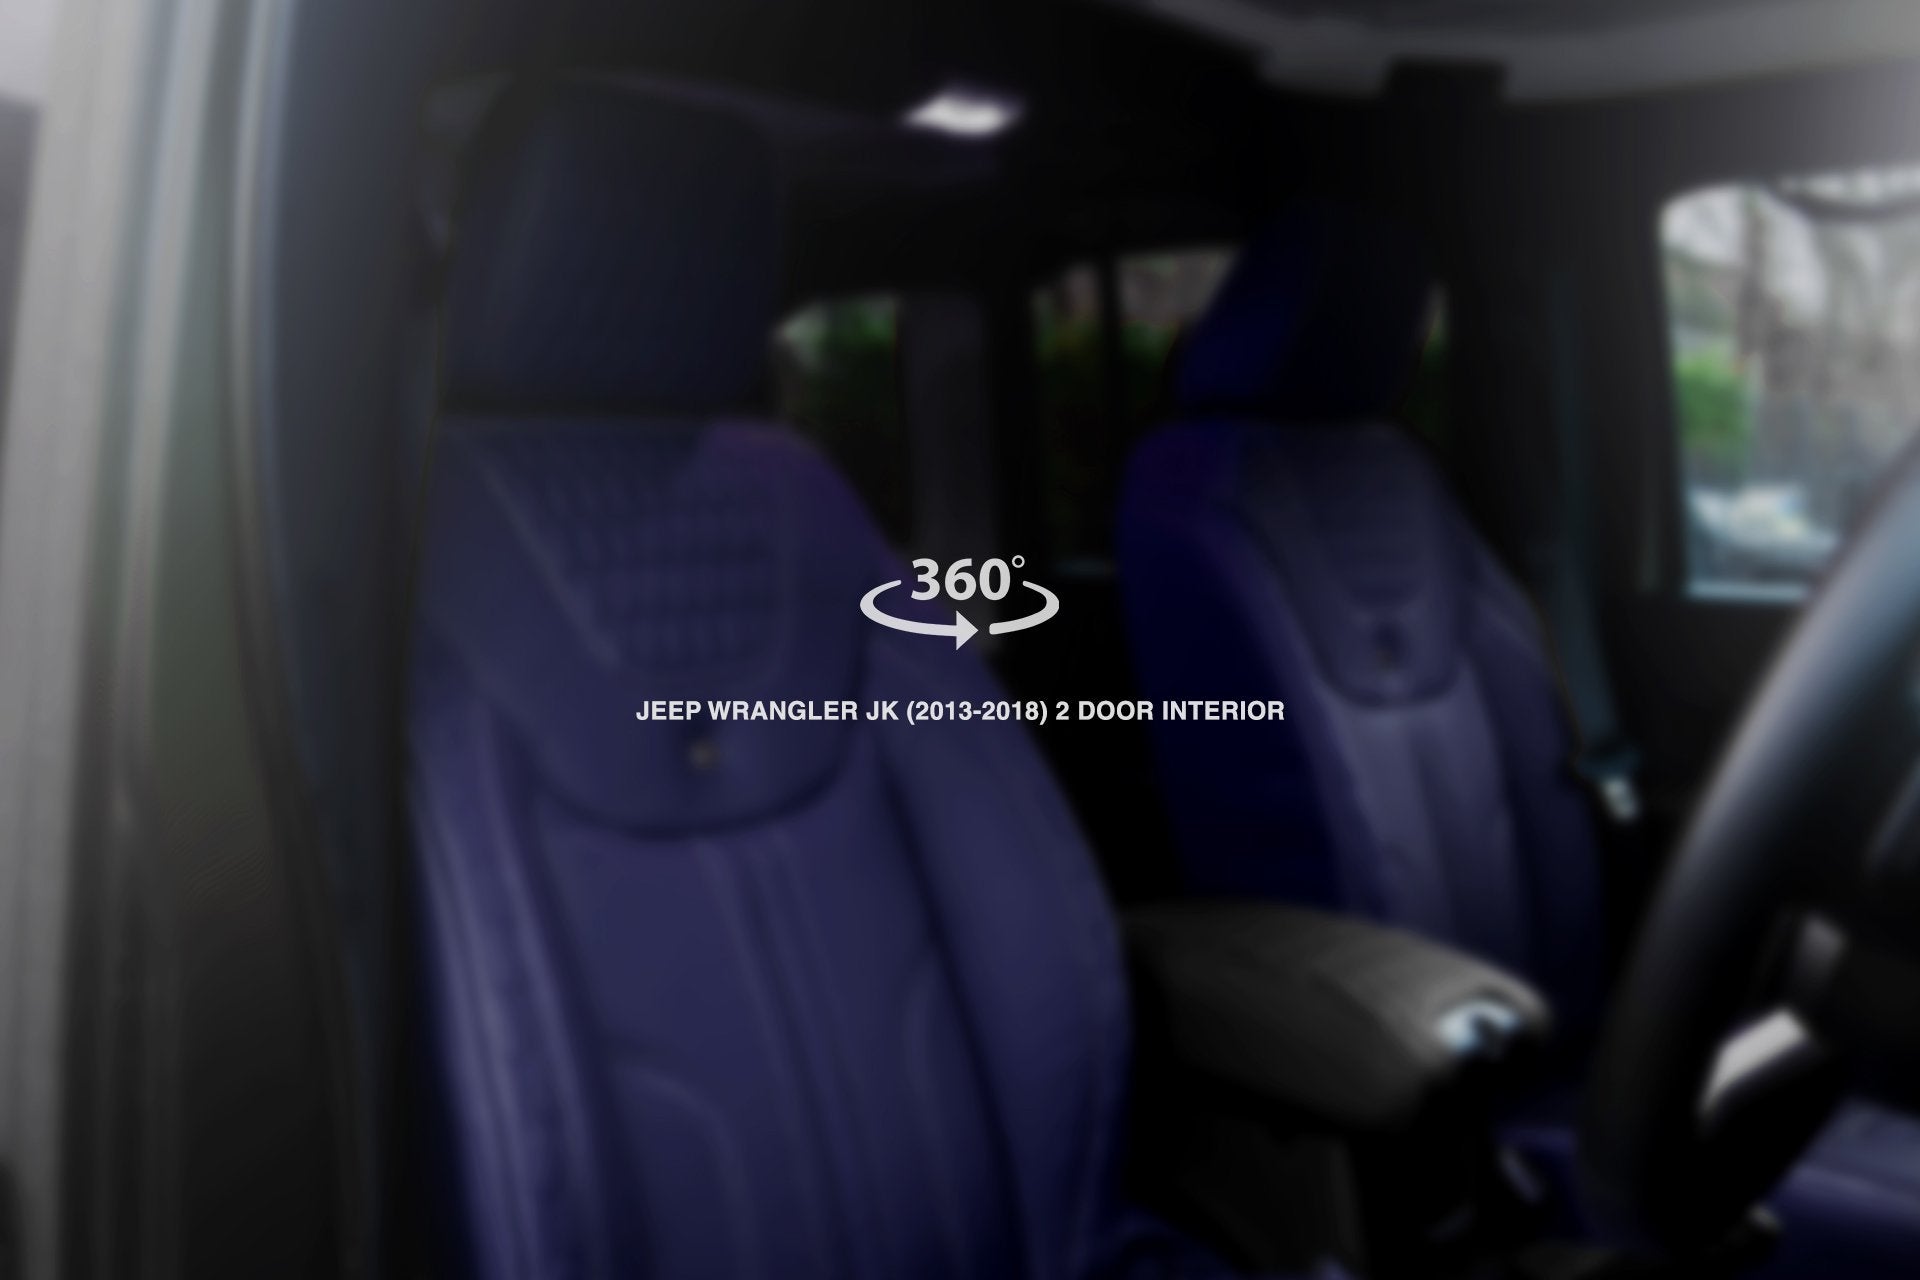 Jeep Wrangler jk 2 Door (2013-2018) Comfort Leather Interior 360° Tour